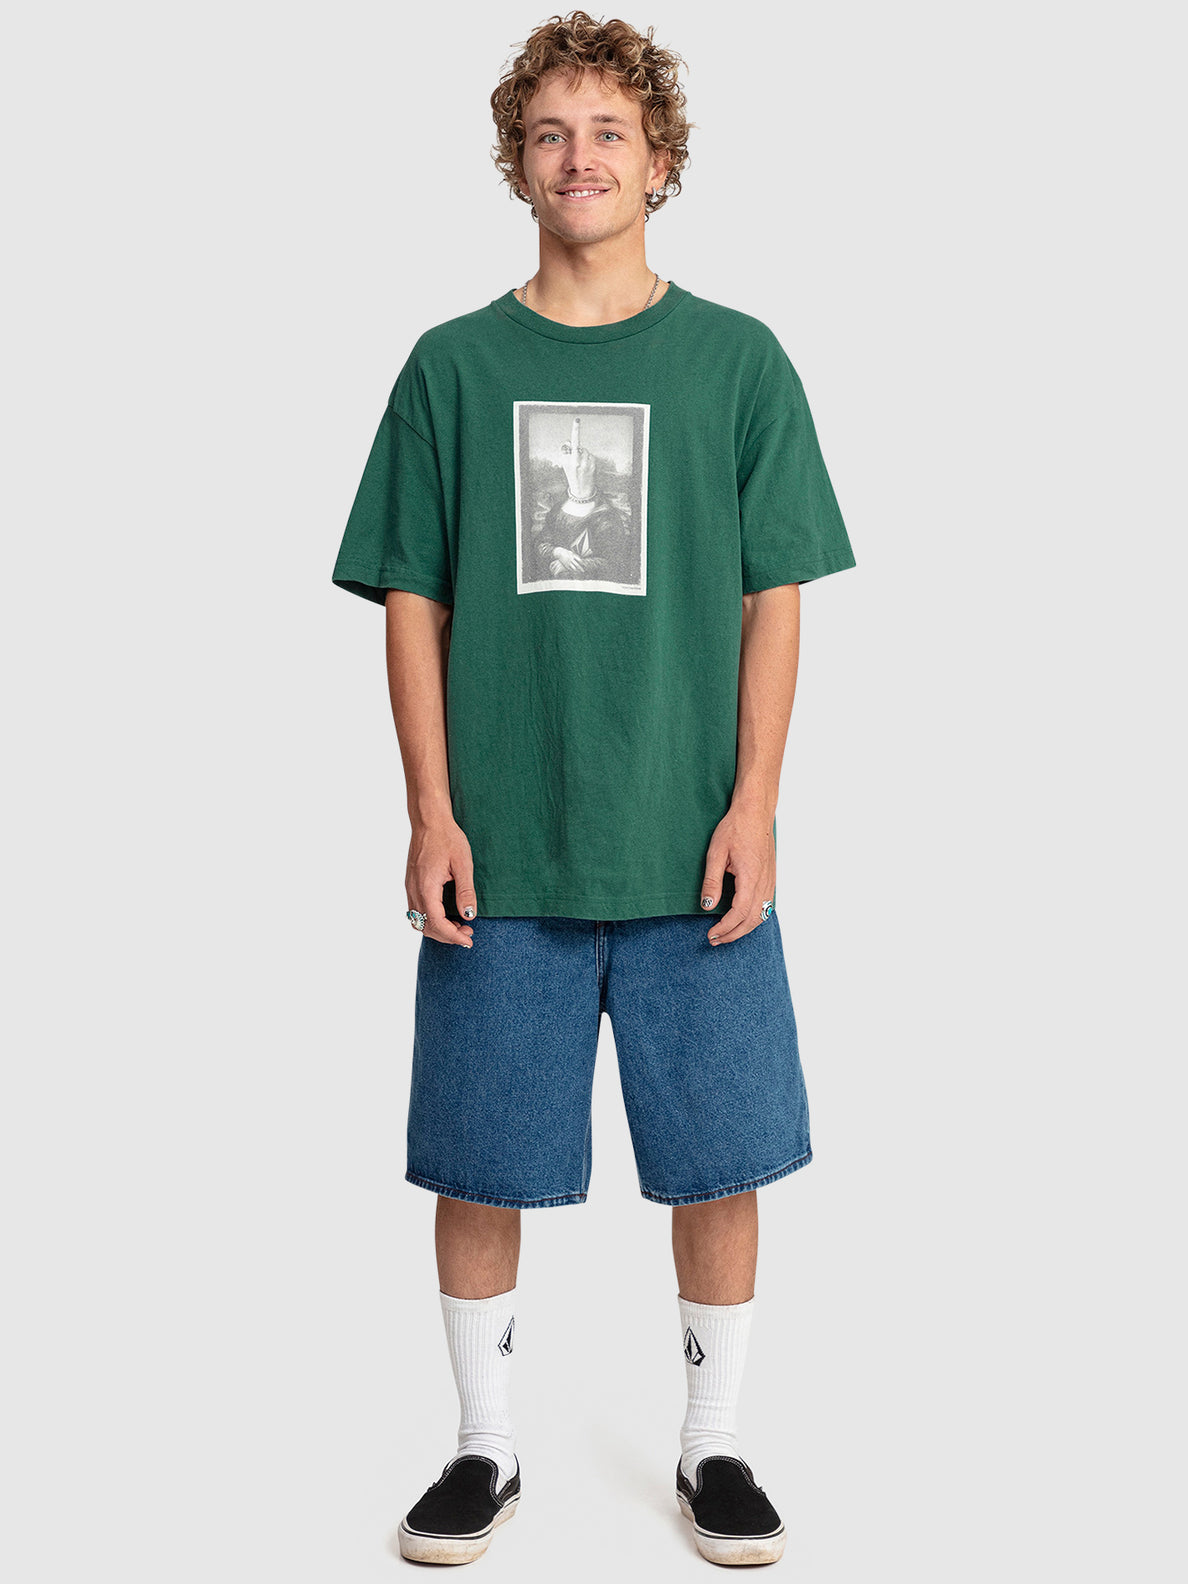 Mona Short Sleeve Lse T-Shirt - Ranger Green (A4342374_RGR) [3]